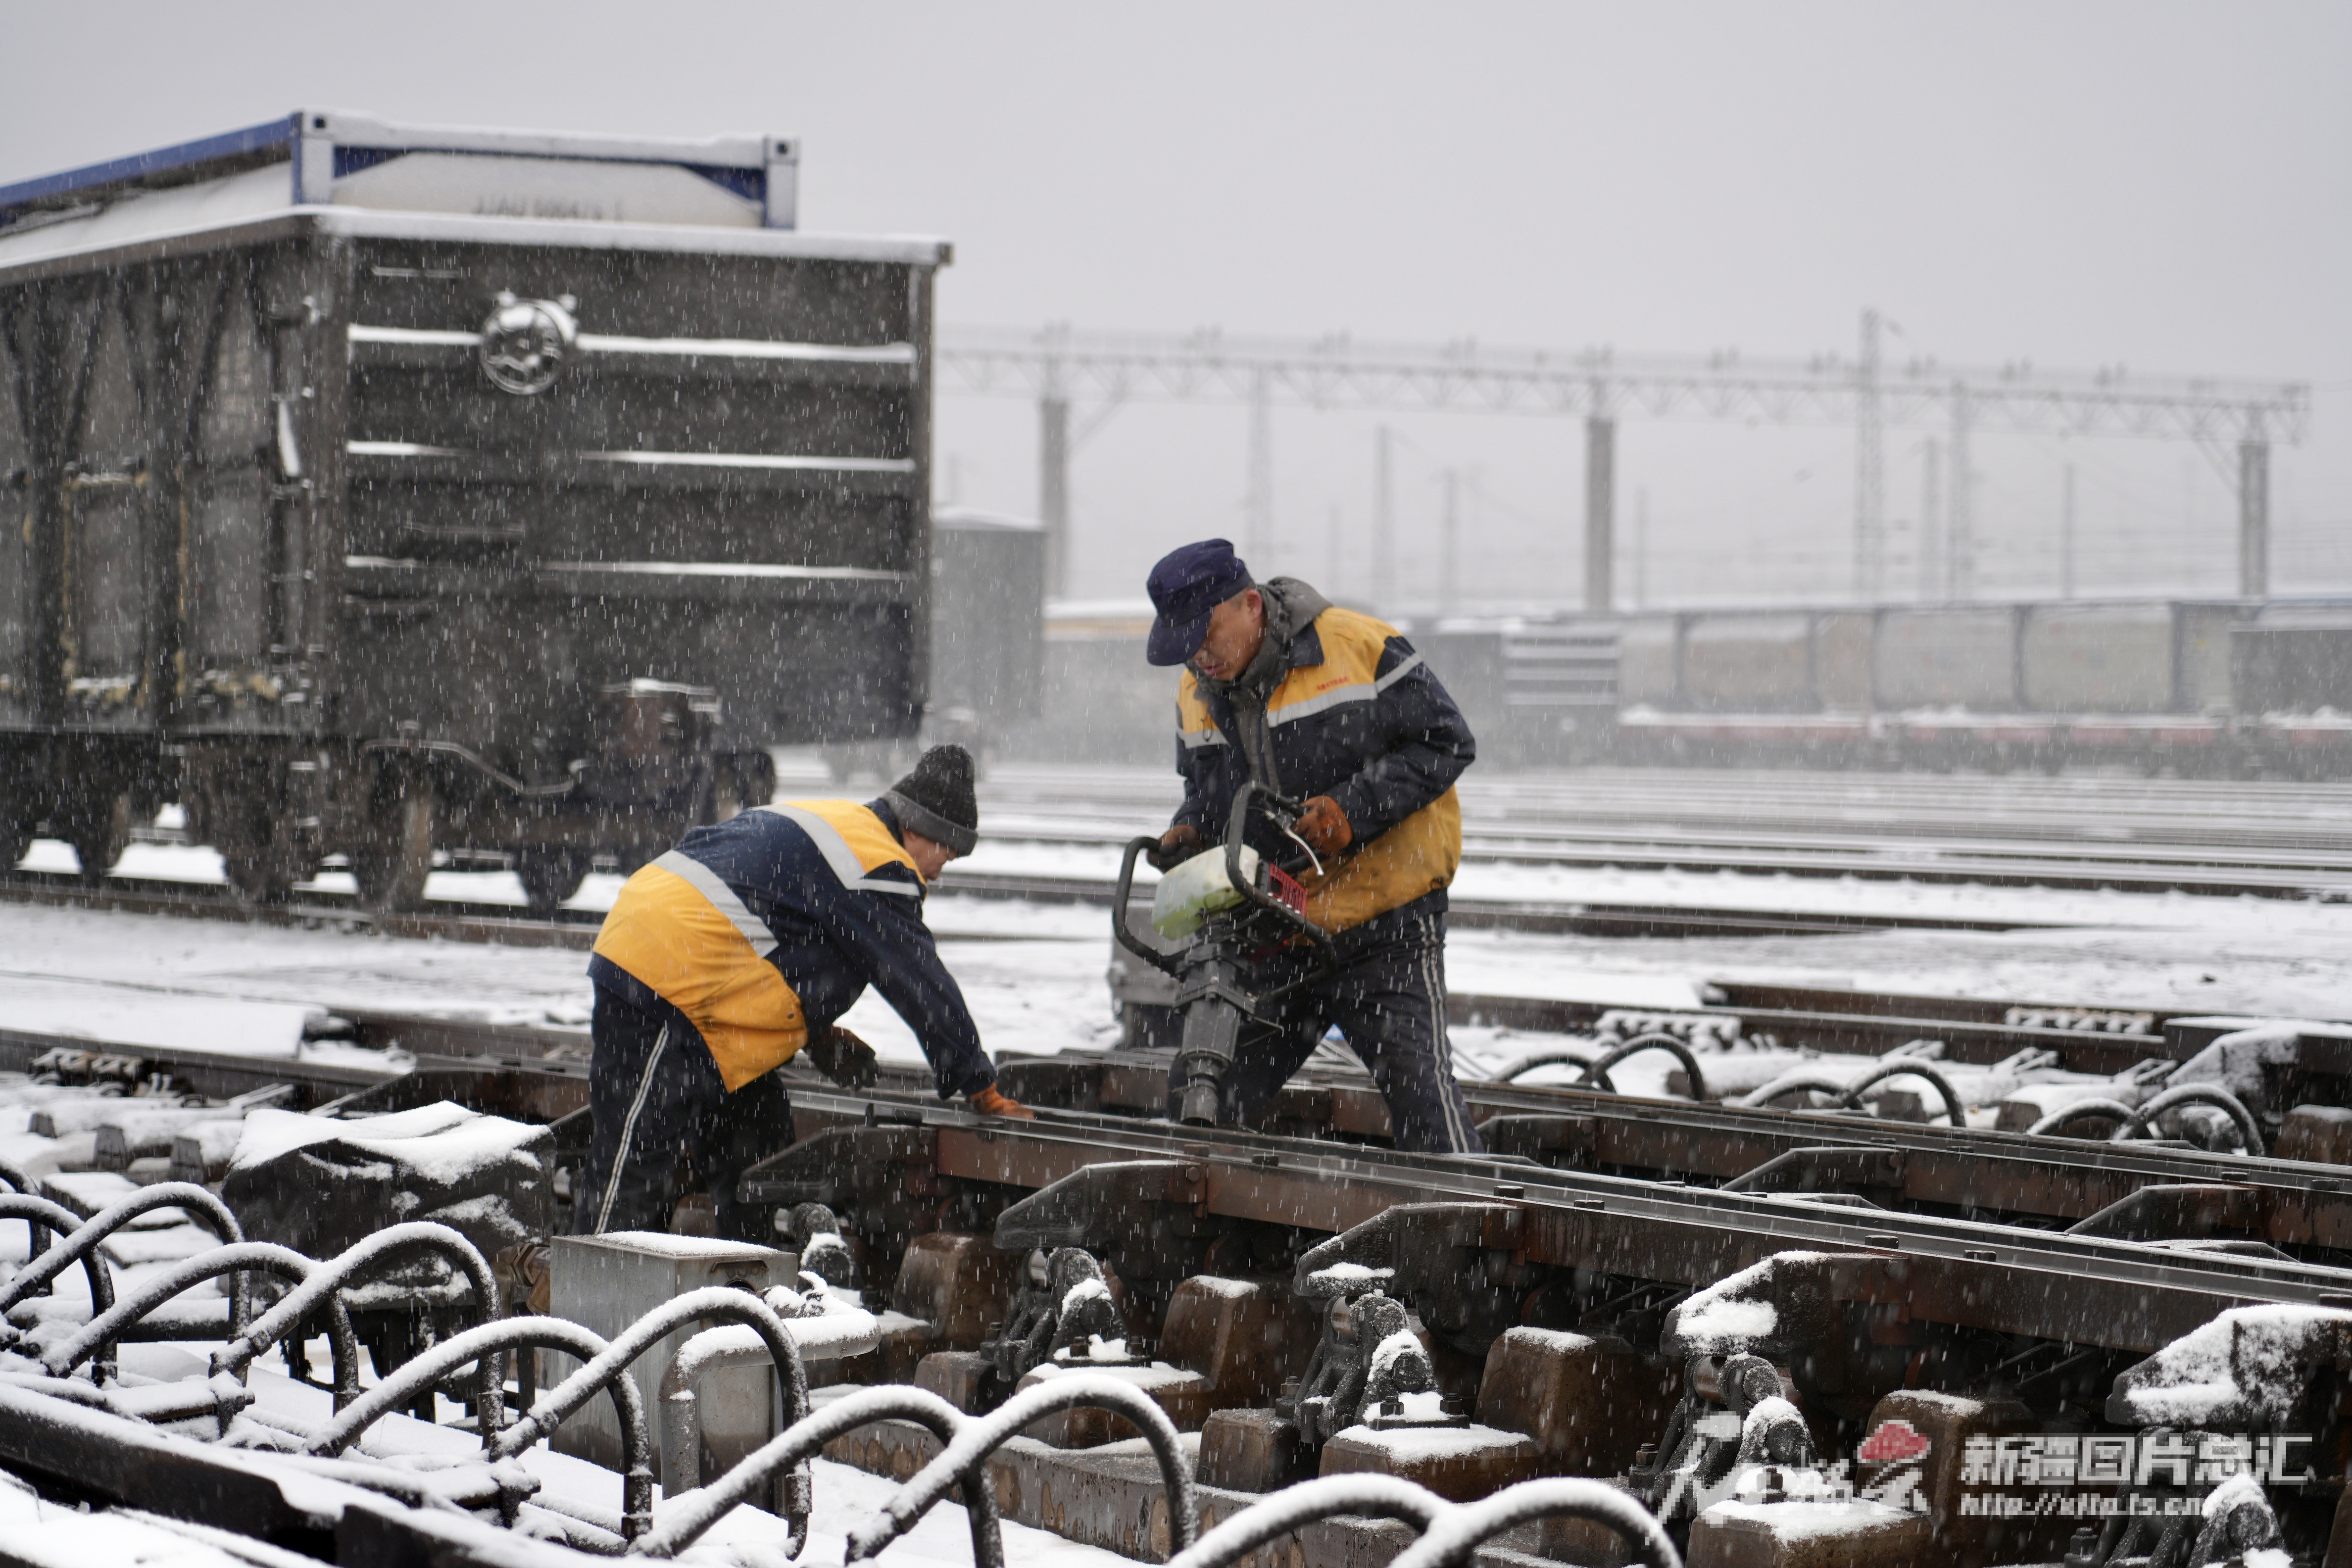 中国公海赌船大风雨雪气象影响众趟列车运转 新疆铁途部分巡检开发保通畅